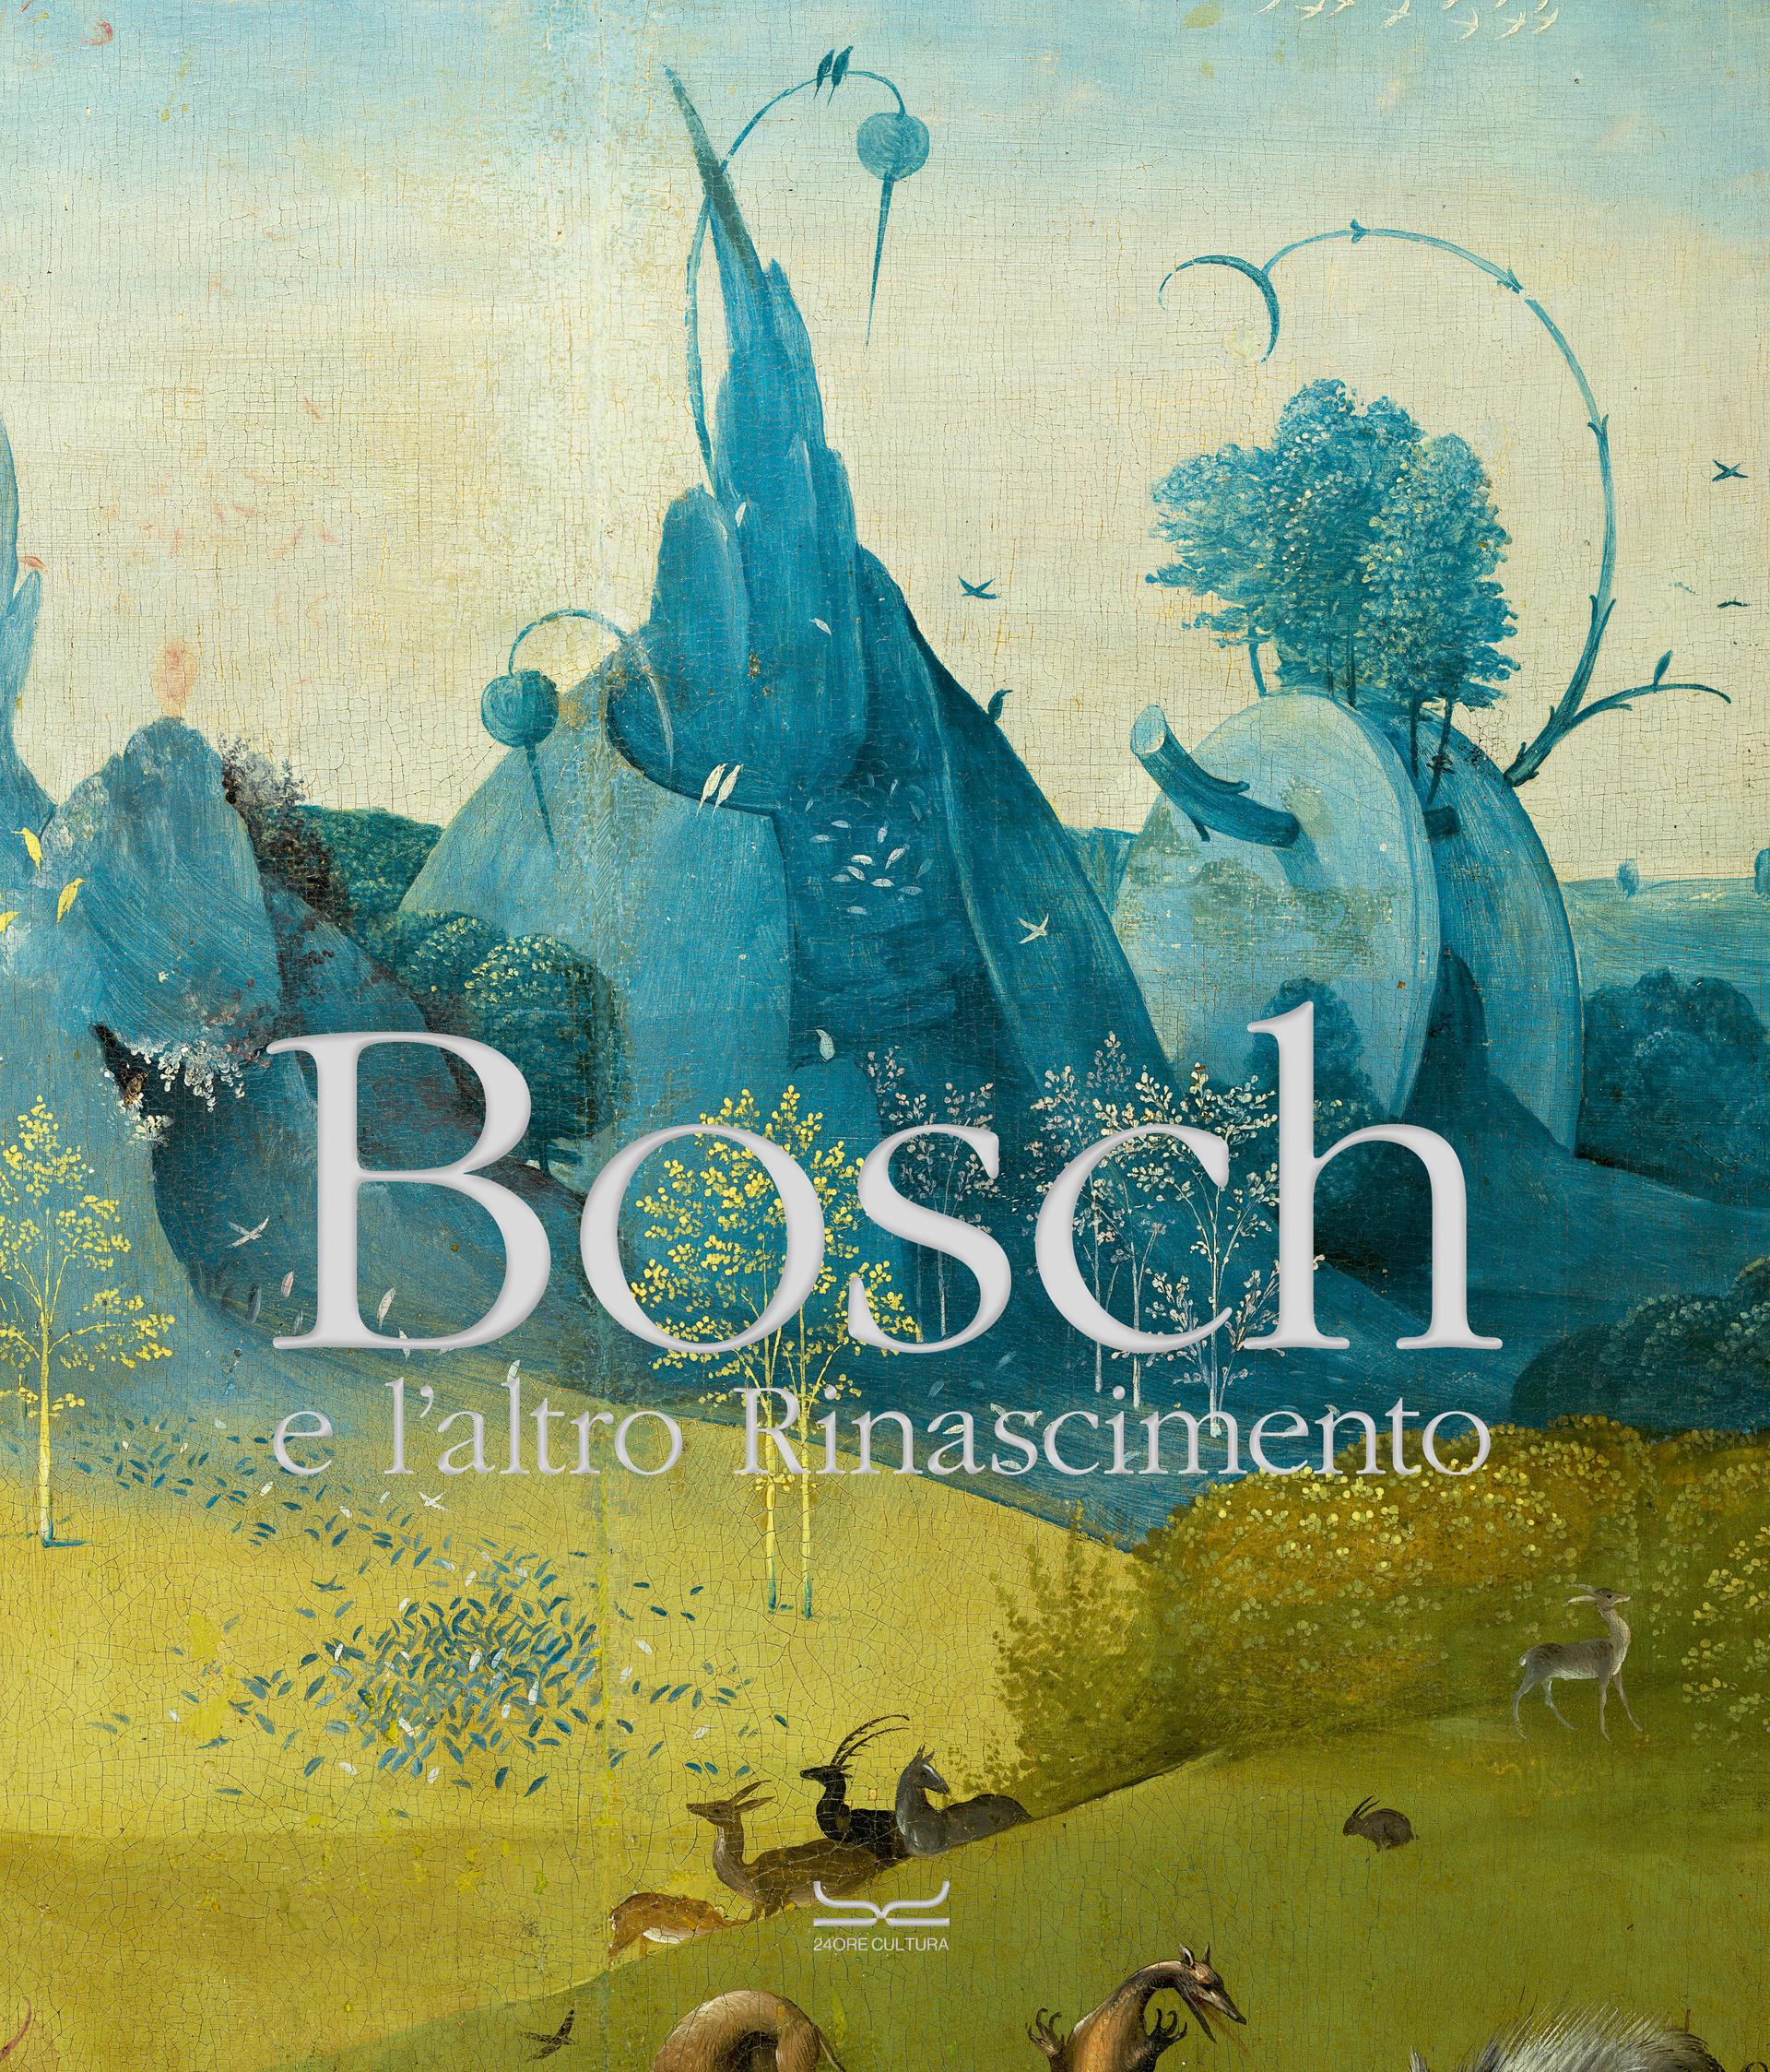 Hieronymus Bosch e l'altro Rinascimento